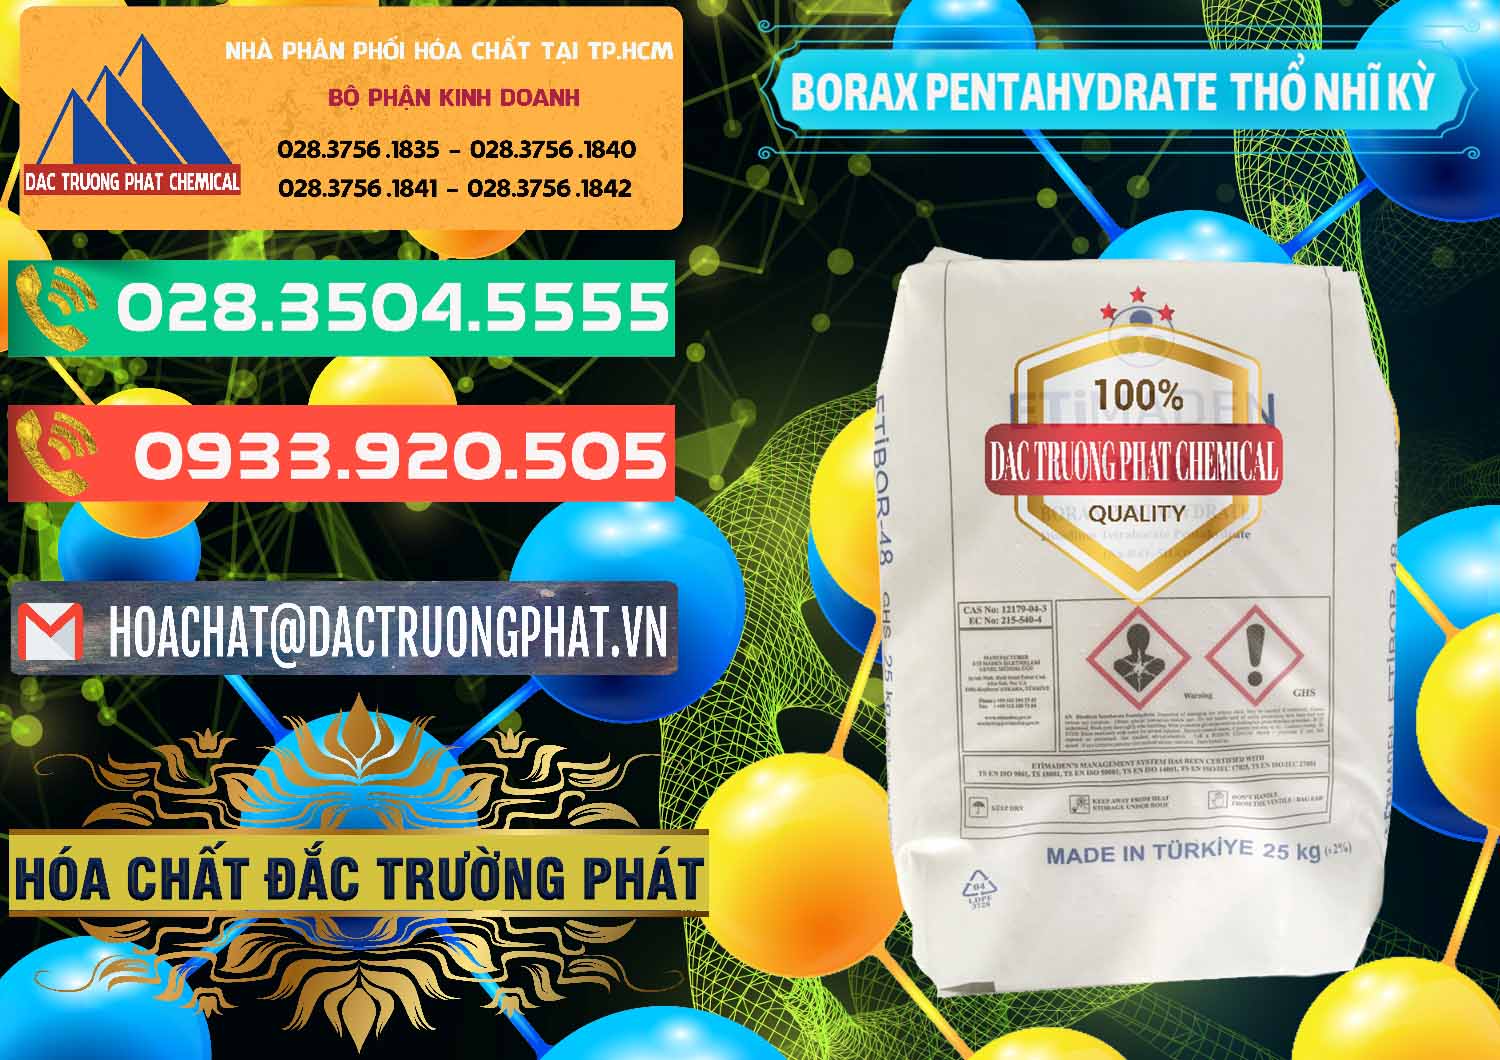 Đơn vị bán & cung cấp Borax Pentahydrate Thổ Nhĩ Kỳ Turkey - 0431 - Chuyên phân phối & nhập khẩu hóa chất tại TP.HCM - congtyhoachat.com.vn